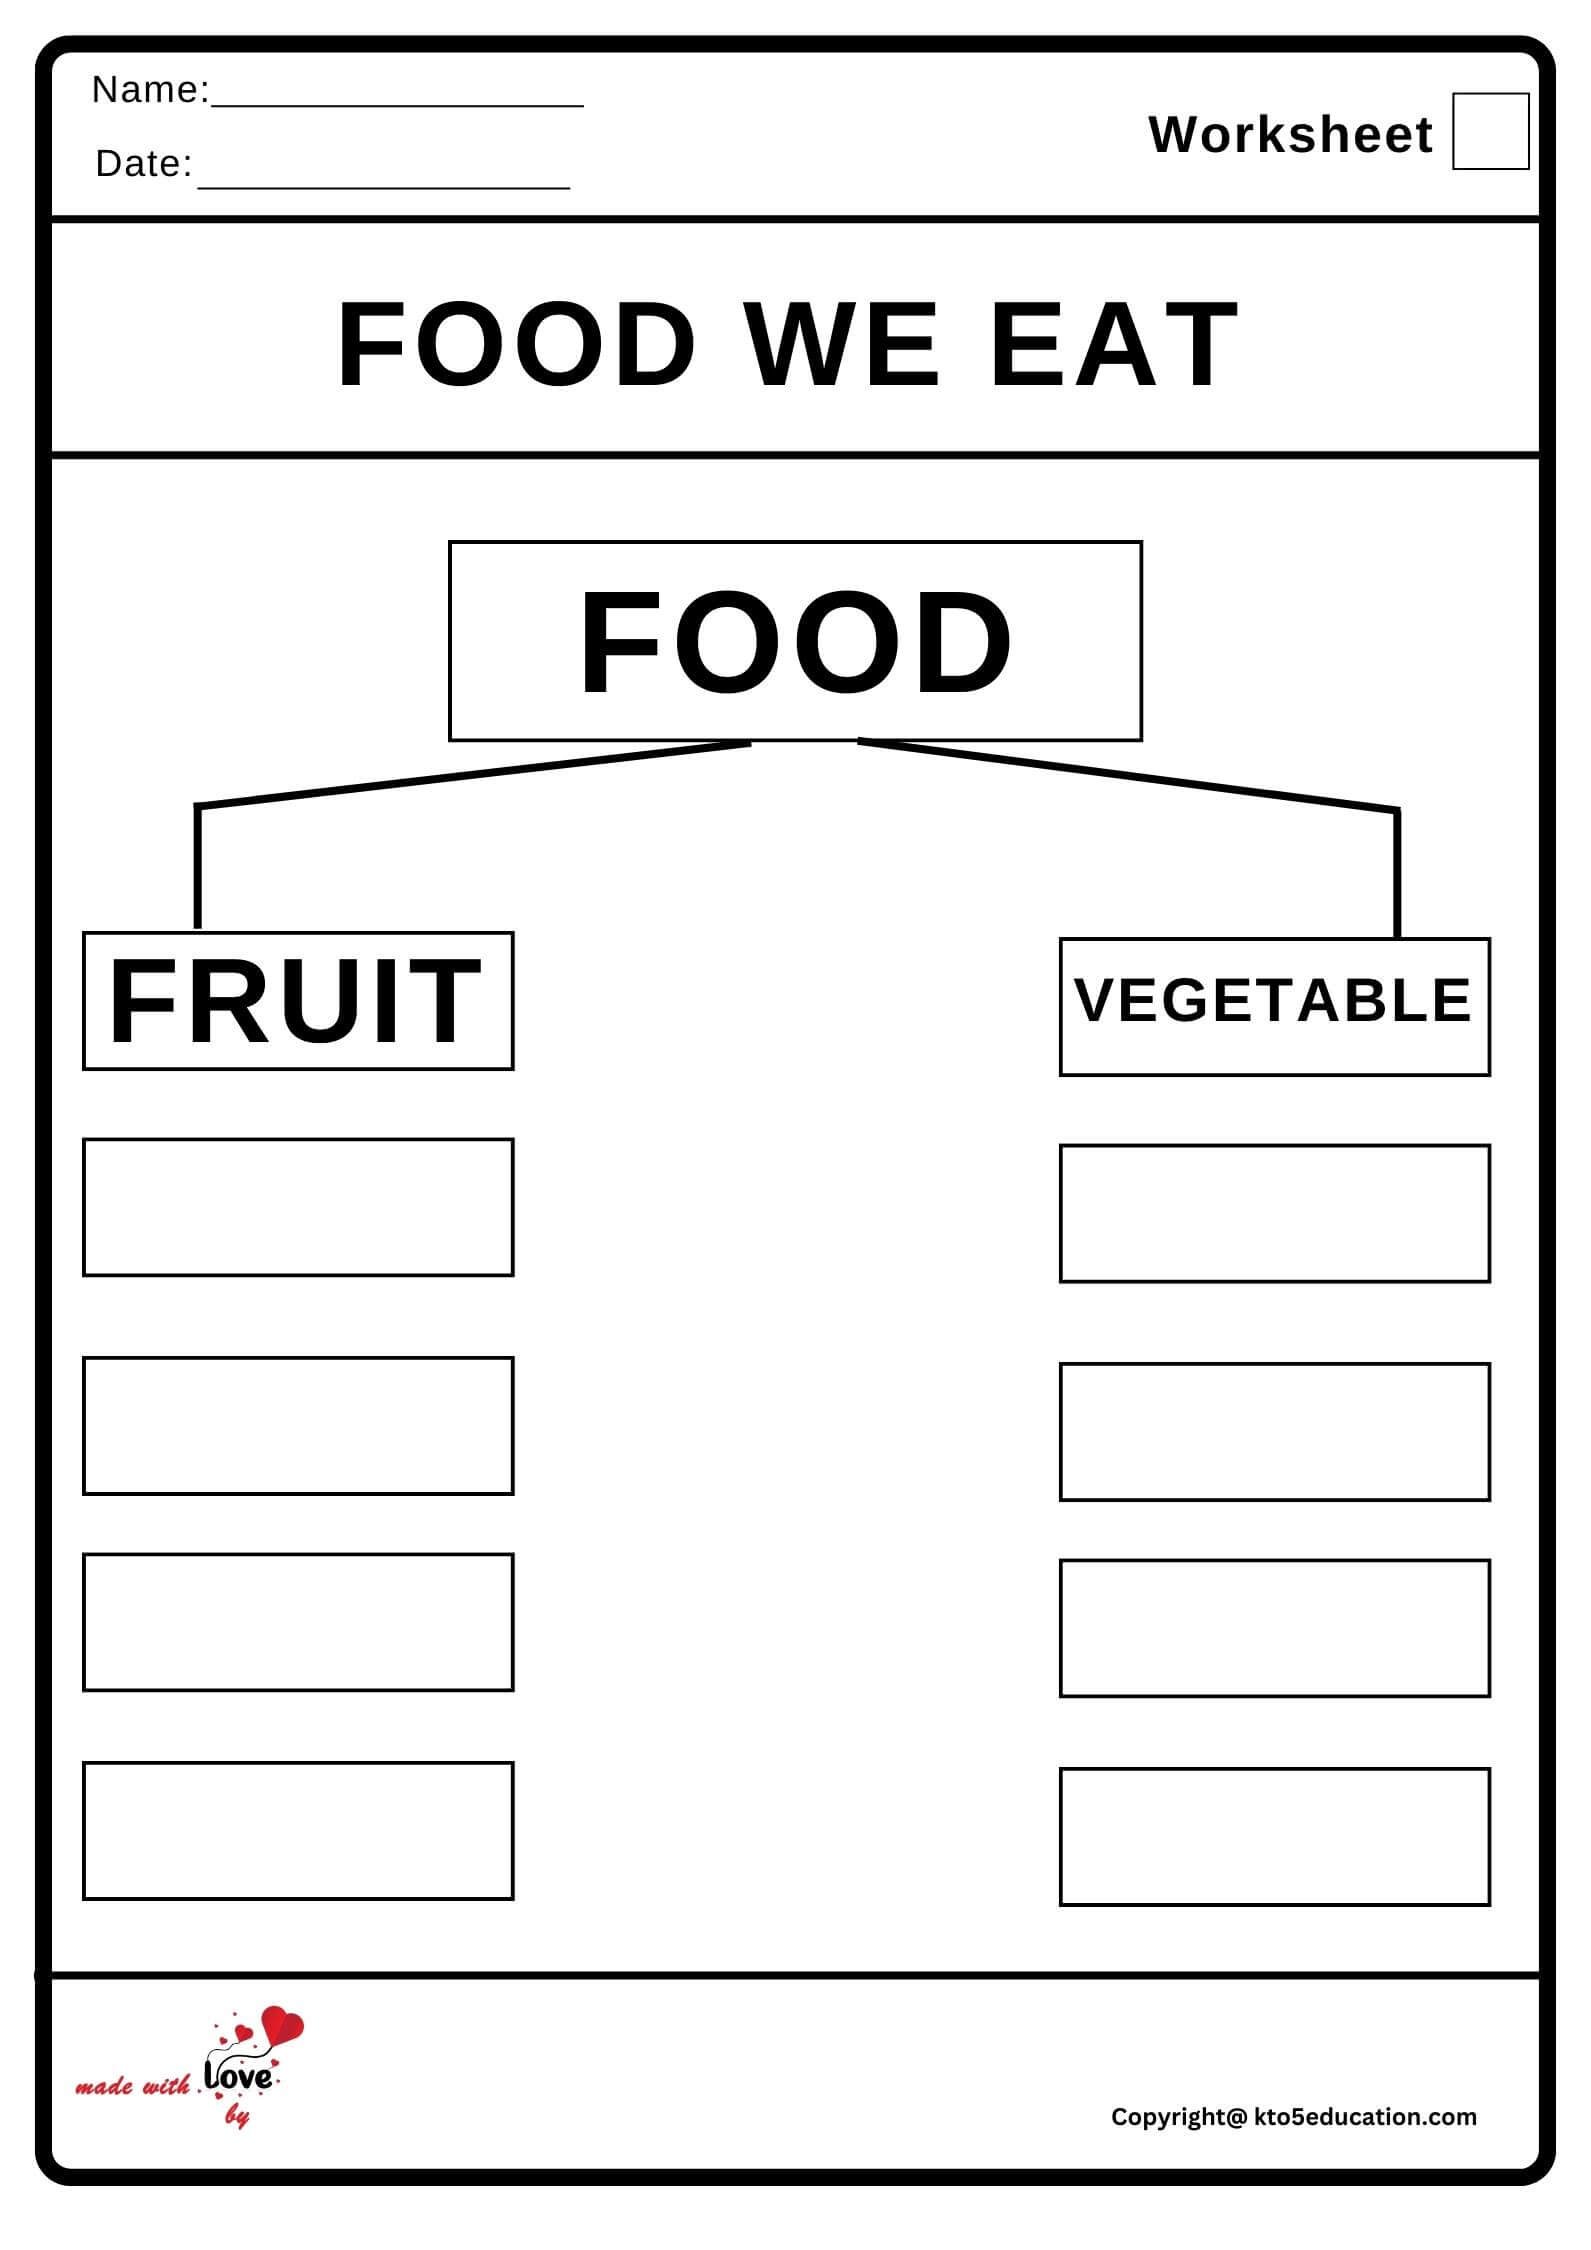 Food We Eat Worksheet 2